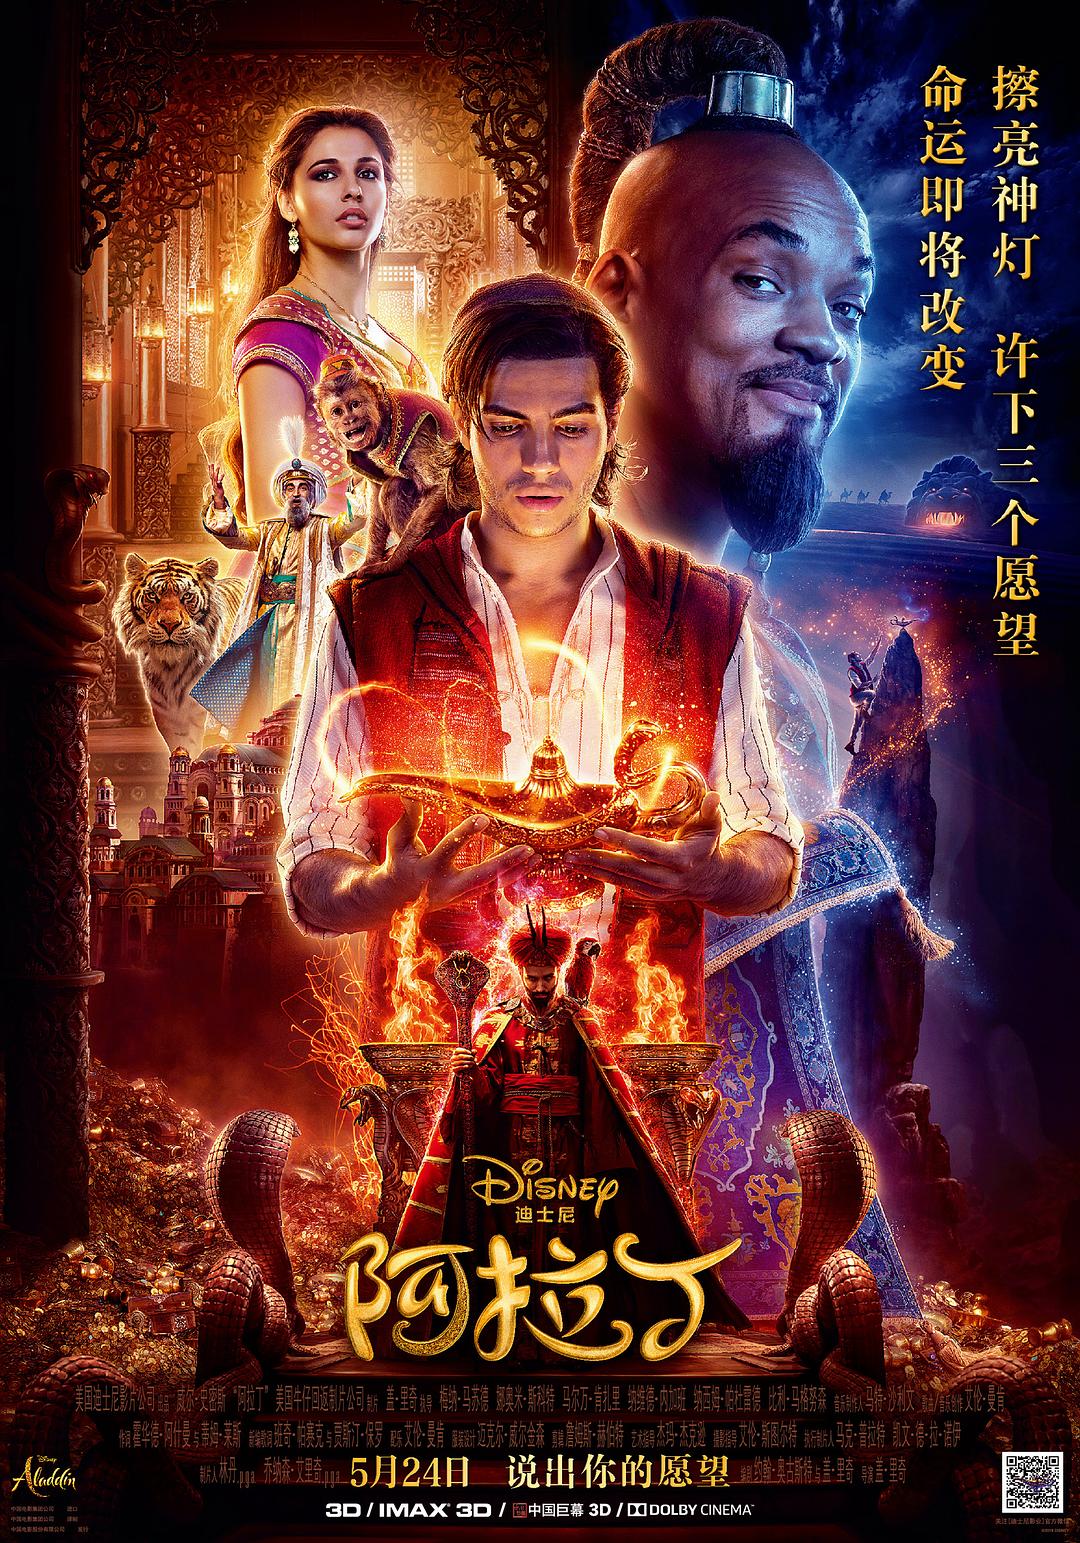 阿拉丁/阿拉丁真人版 Aladdin.2019.720p.BluRay.x264-SPARKS 6.57GB-1.png